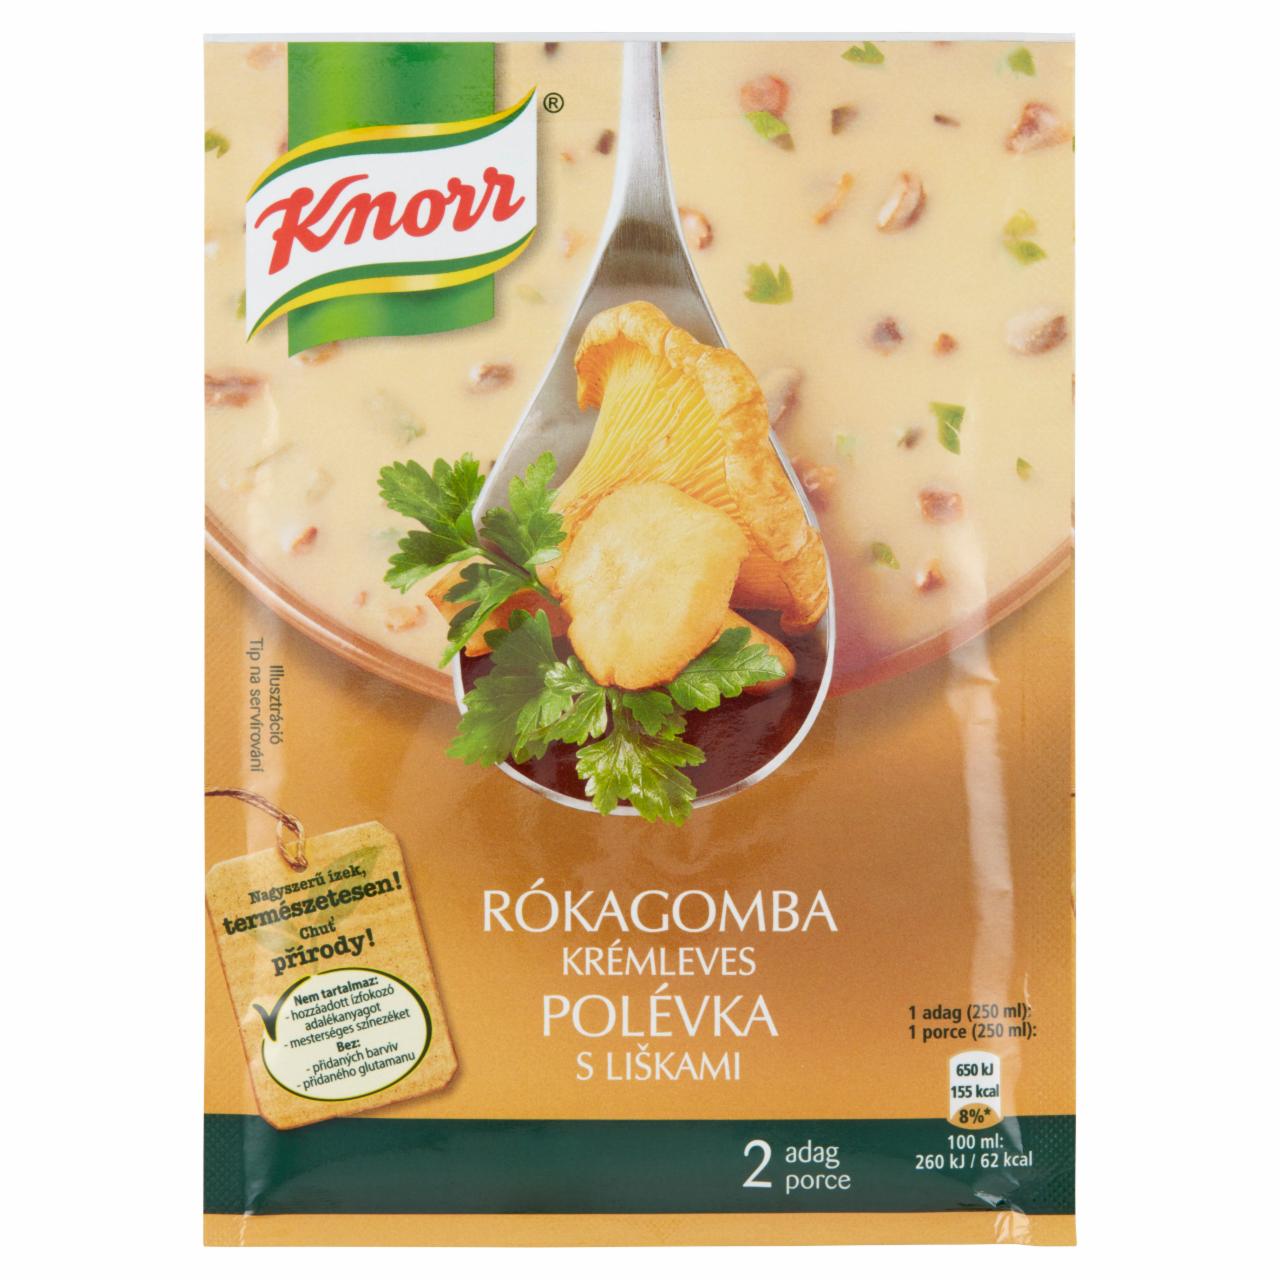 Képek - Knorr rókagomba krémleves 63 g